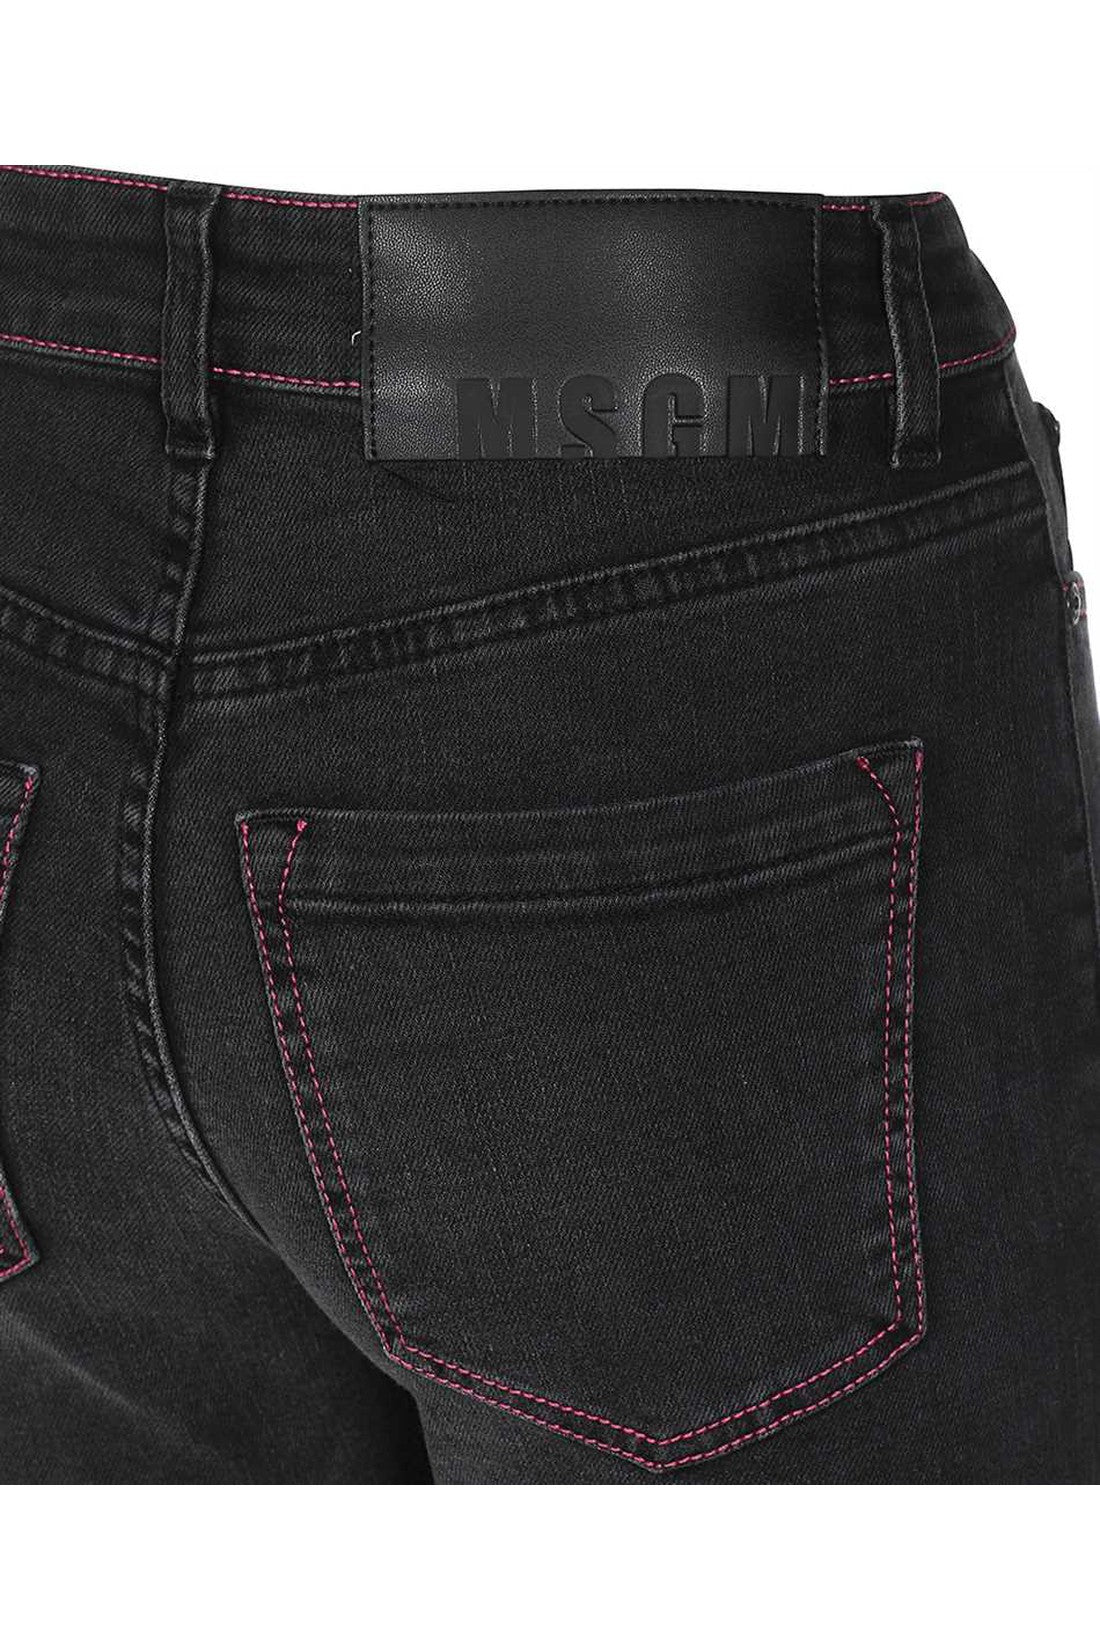 5-pocket jeans-Jeans-MSGM-OUTLET-SALE-ARCHIVIST